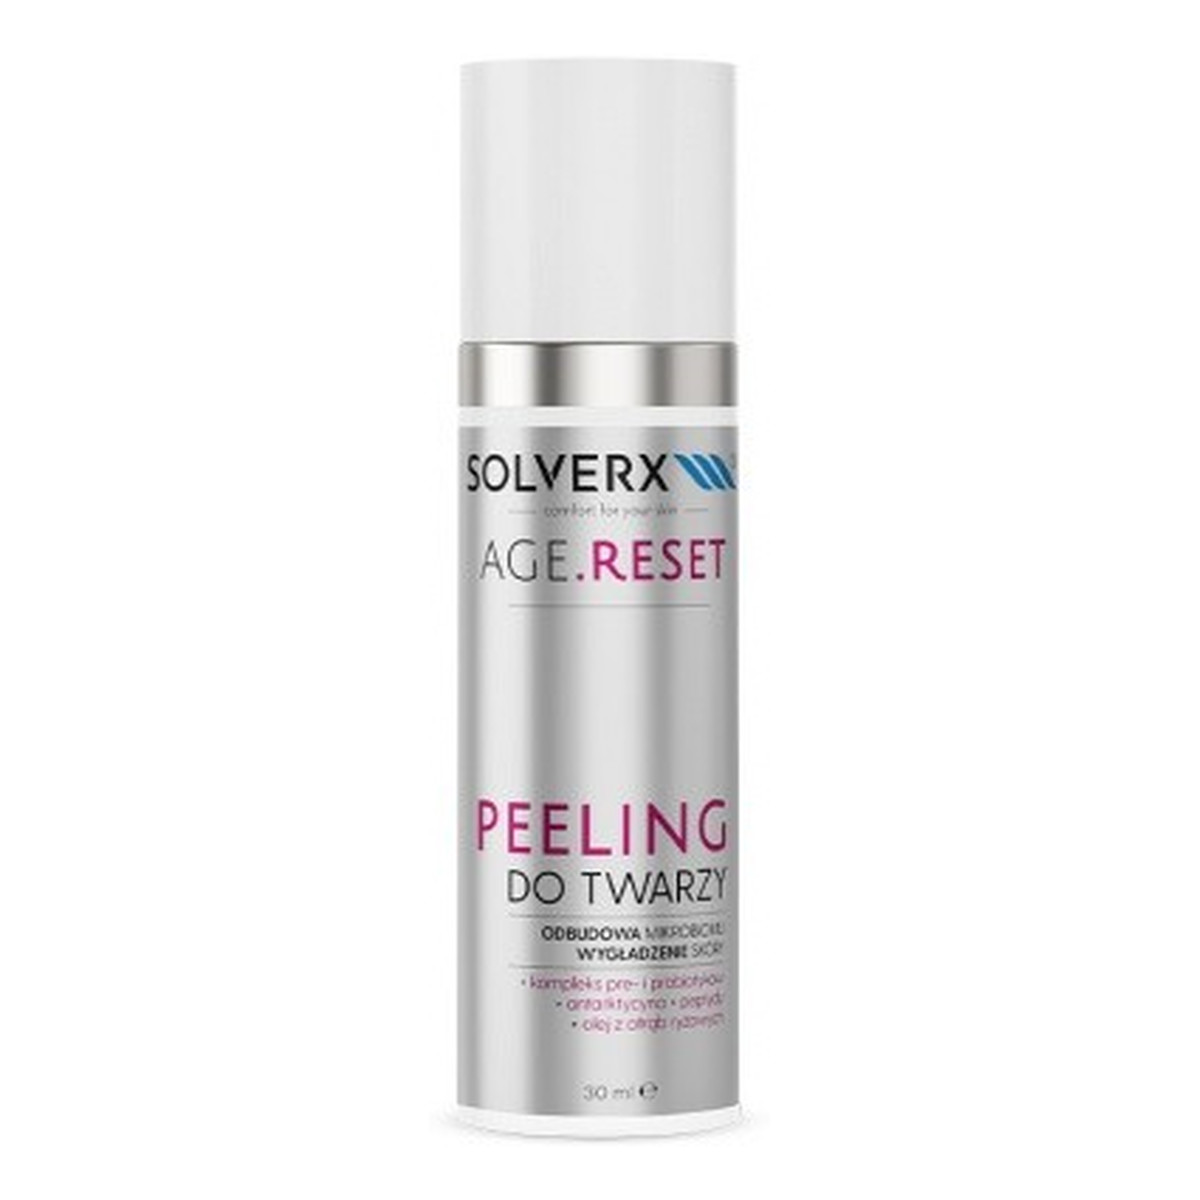 Solverx Age.Reset Peeling do twarzy - Wygładzenie Skóry & Odbudowa Mikrobiomu 30ml